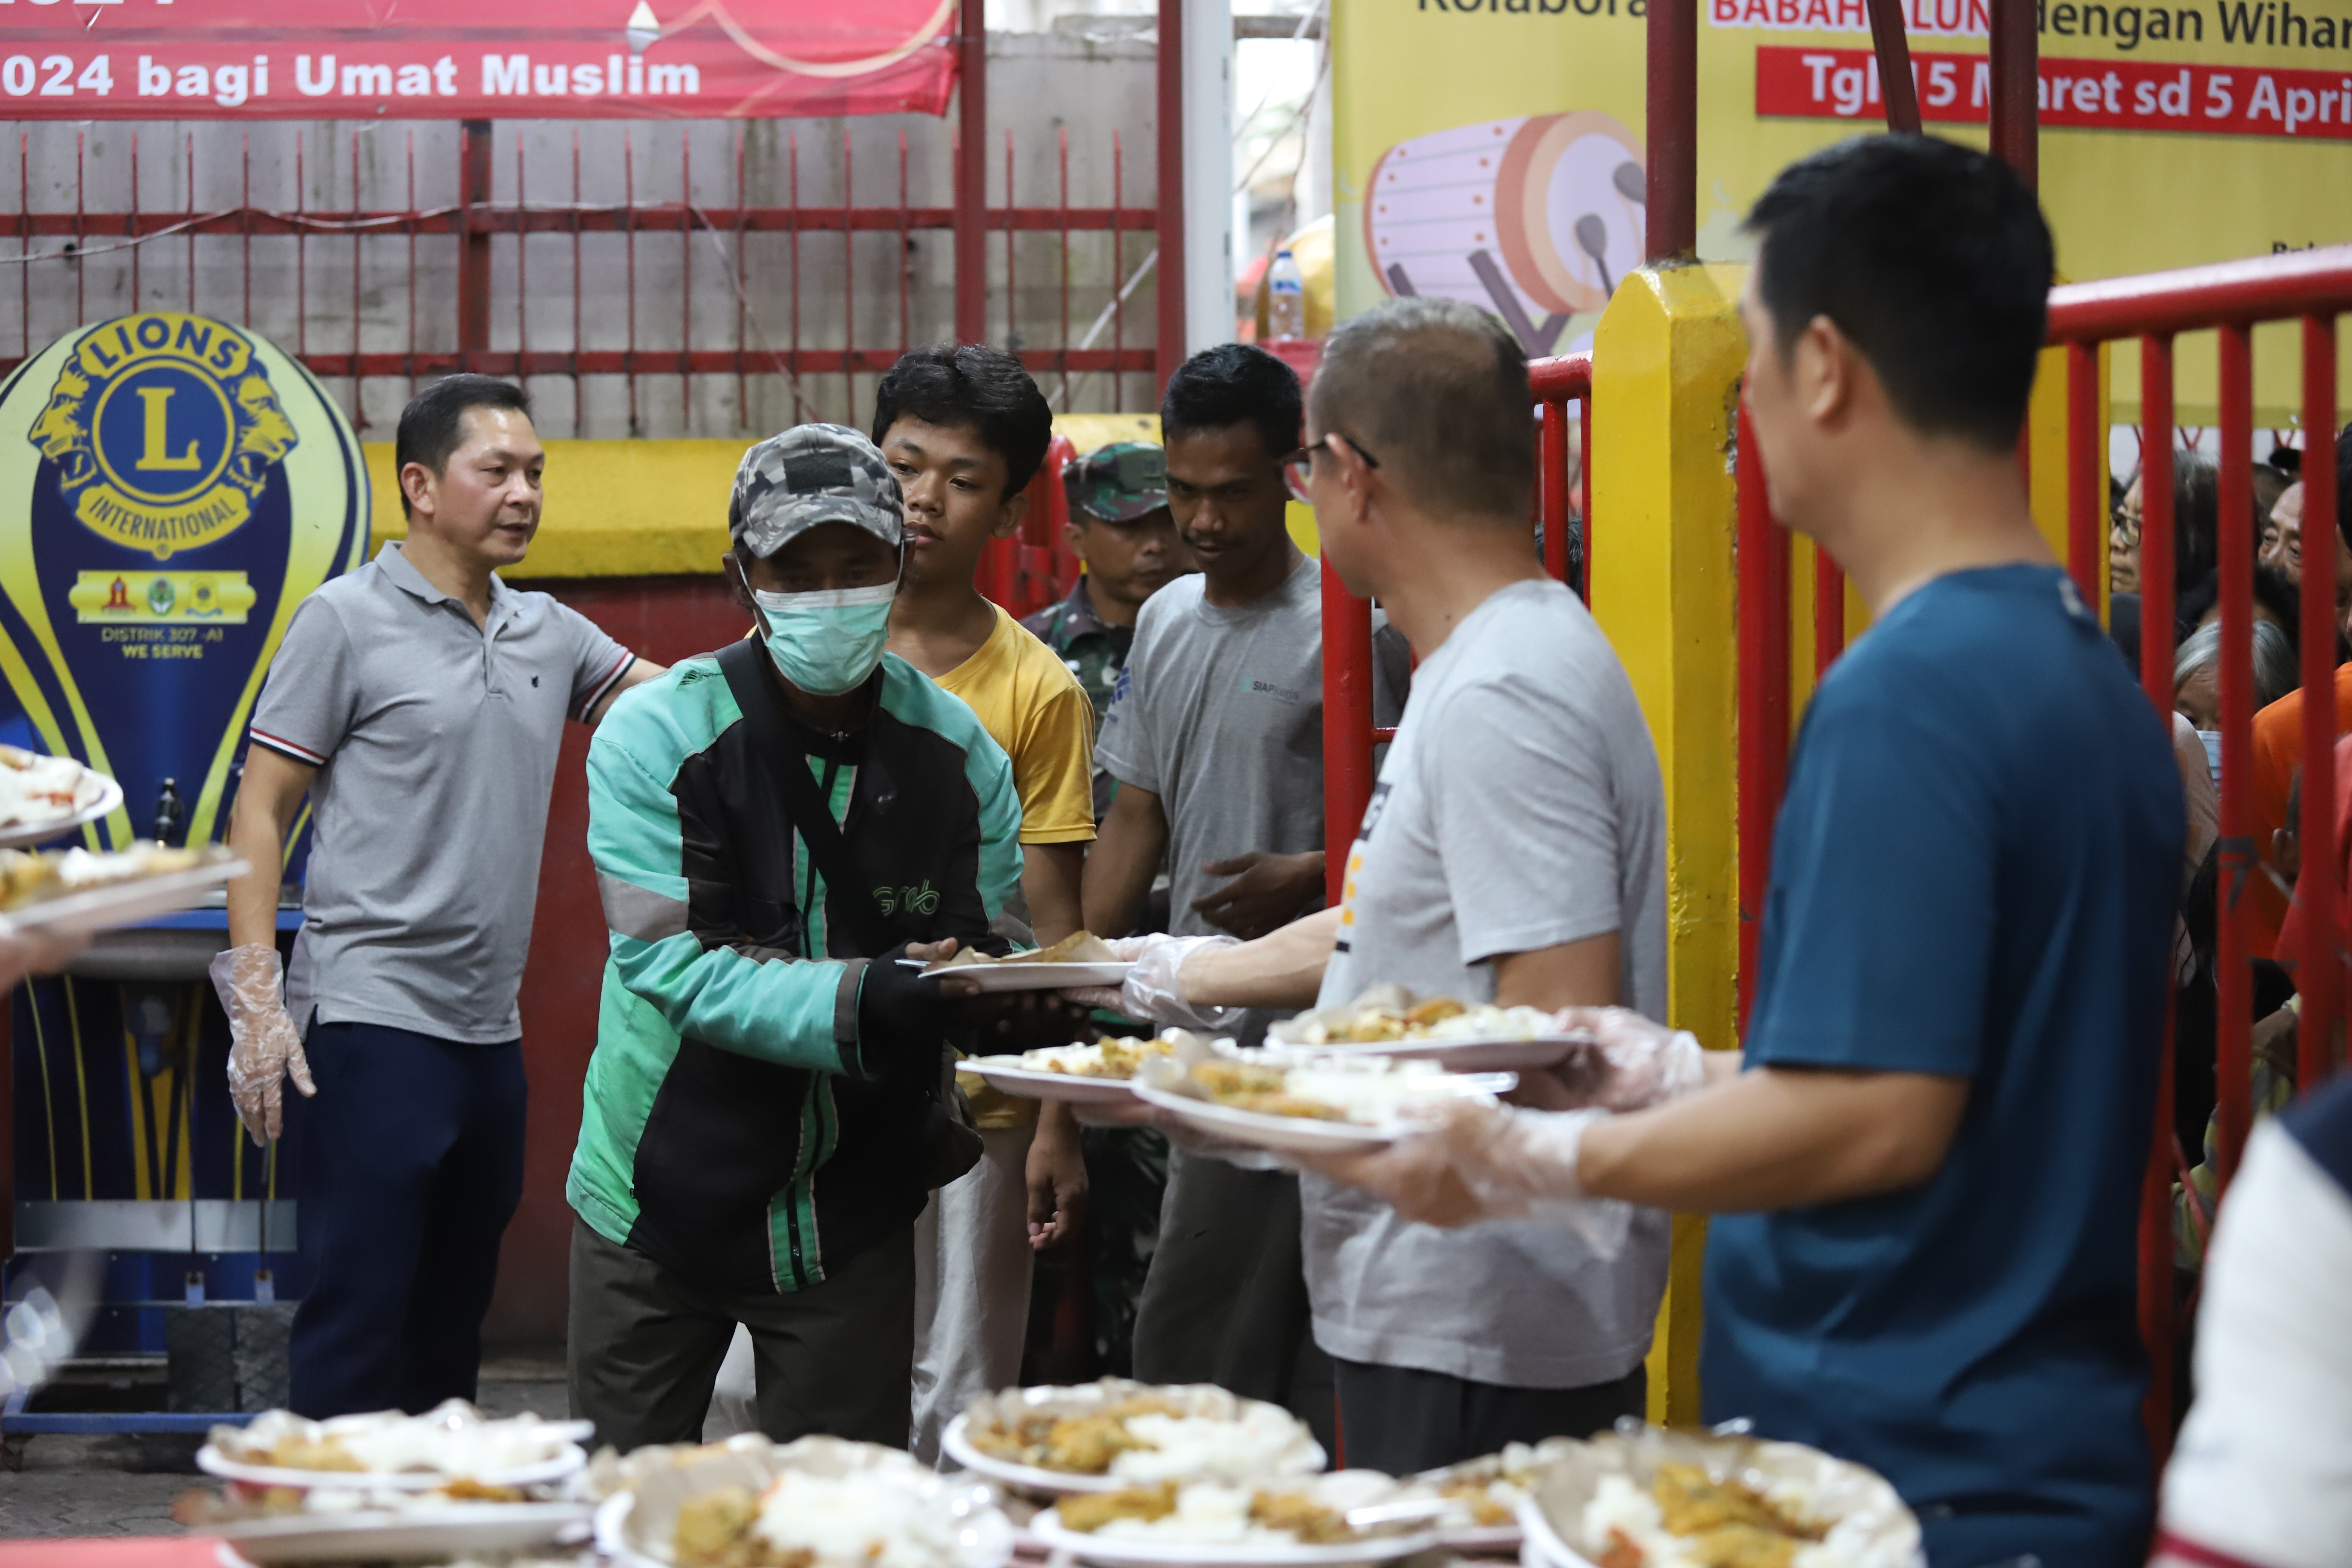 Warga antre mengambil makanan untuk berbuka puasa di Vihara Dharma Bakti, Petak Sembilan, Jakarta, Senin (19/3).(Indonesiaglobe/Oke Atmaja)